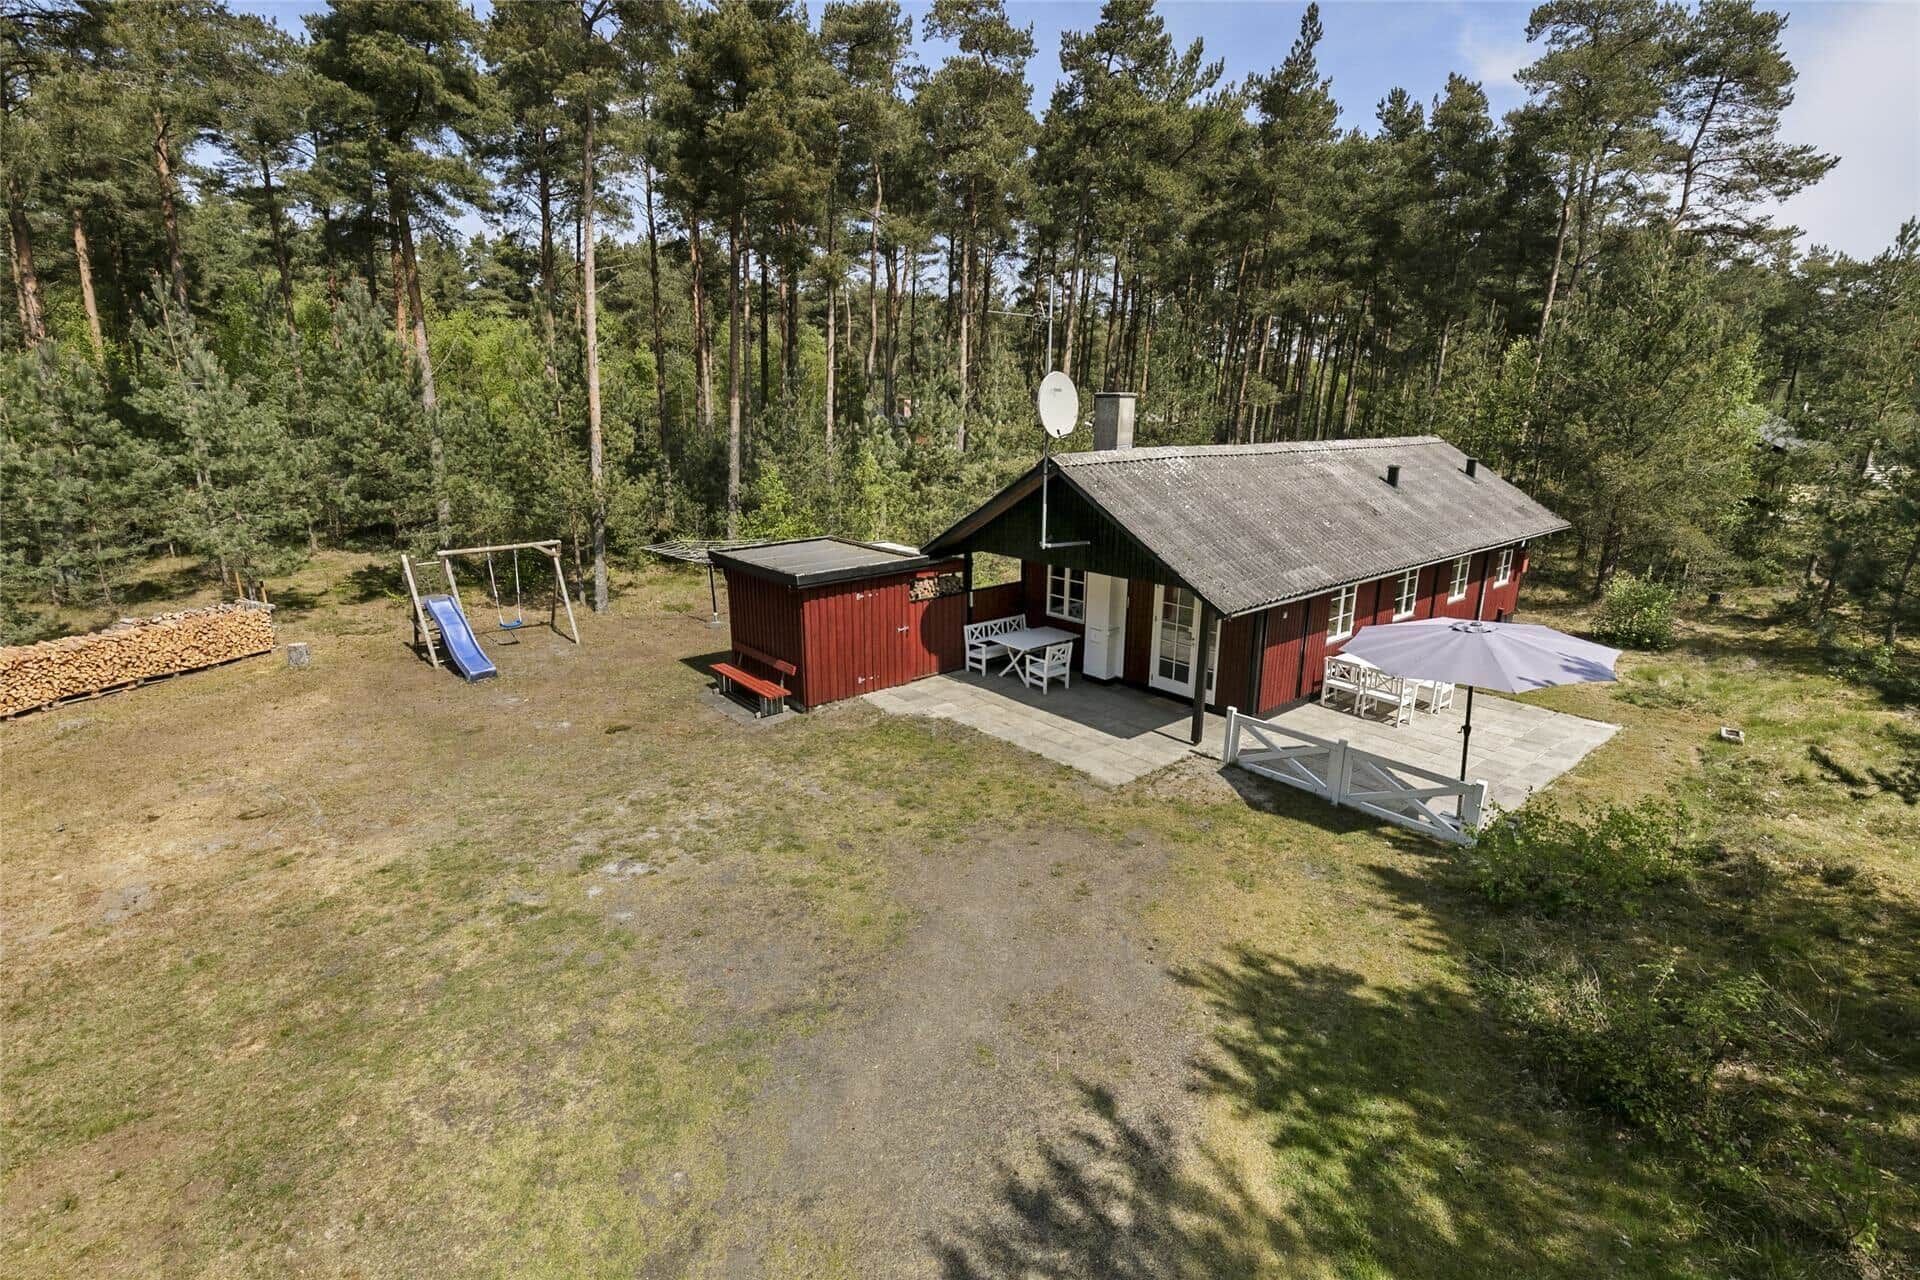 Image 0-10 Holiday-home 1573, Fyrreskoven 36, DK - 3720 Aakirkeby